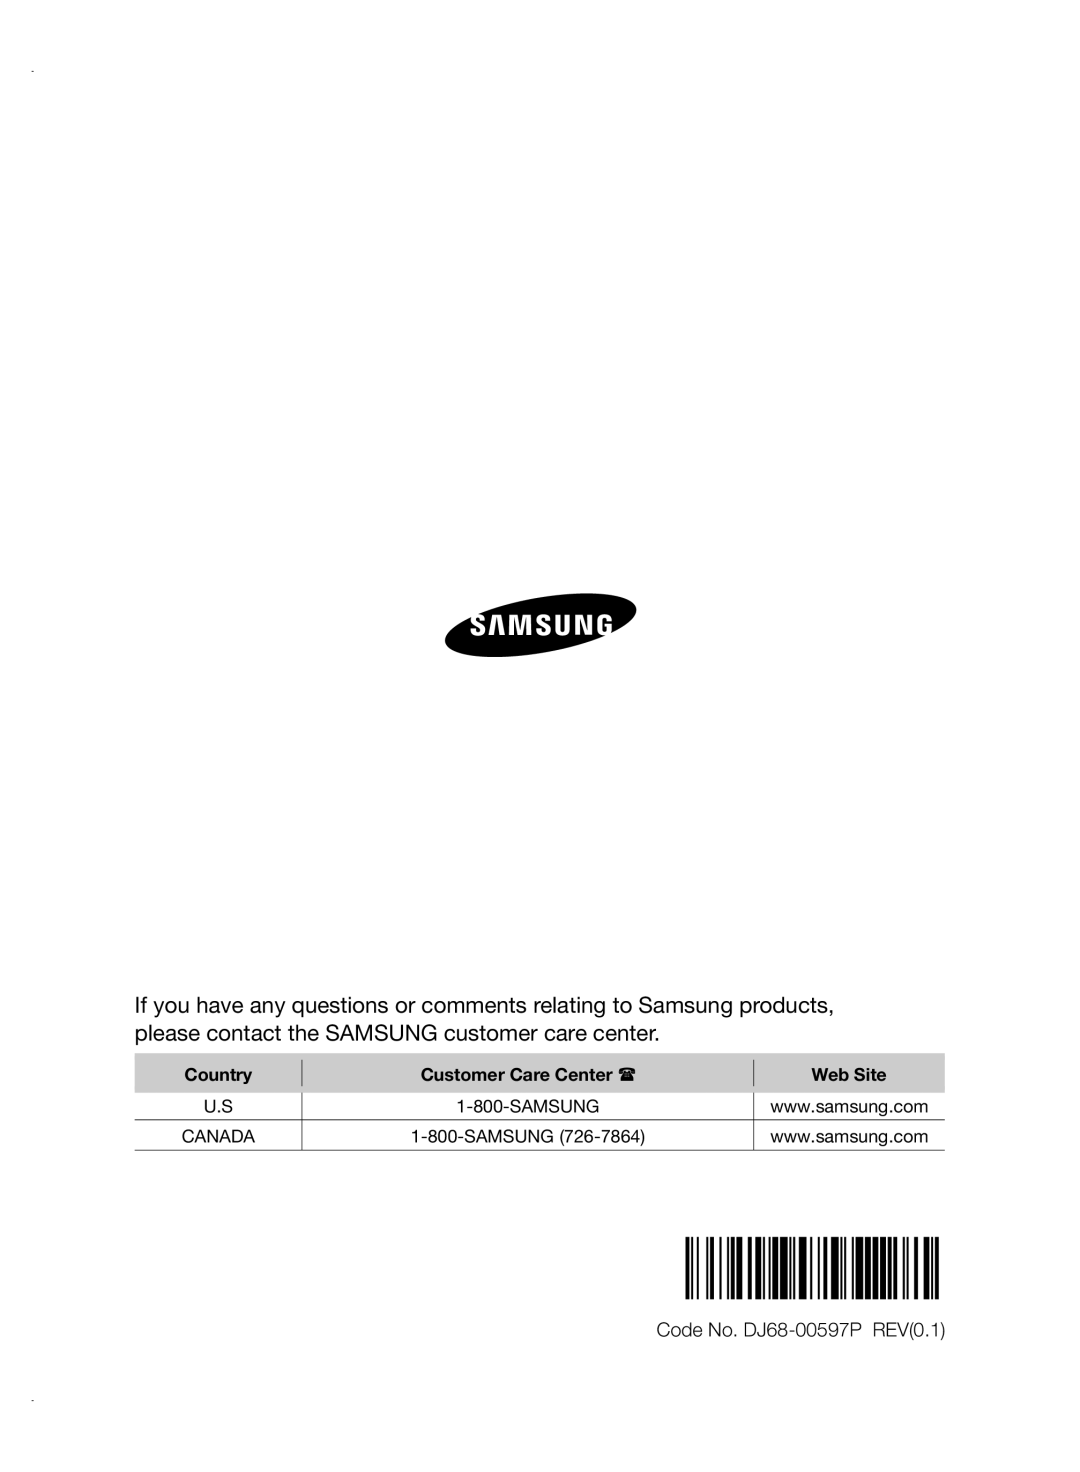 Samsung VCC88P0H1B user manual Code No. DJ68-00597PREV0.1, Country, Customer Care Center, Web Site 